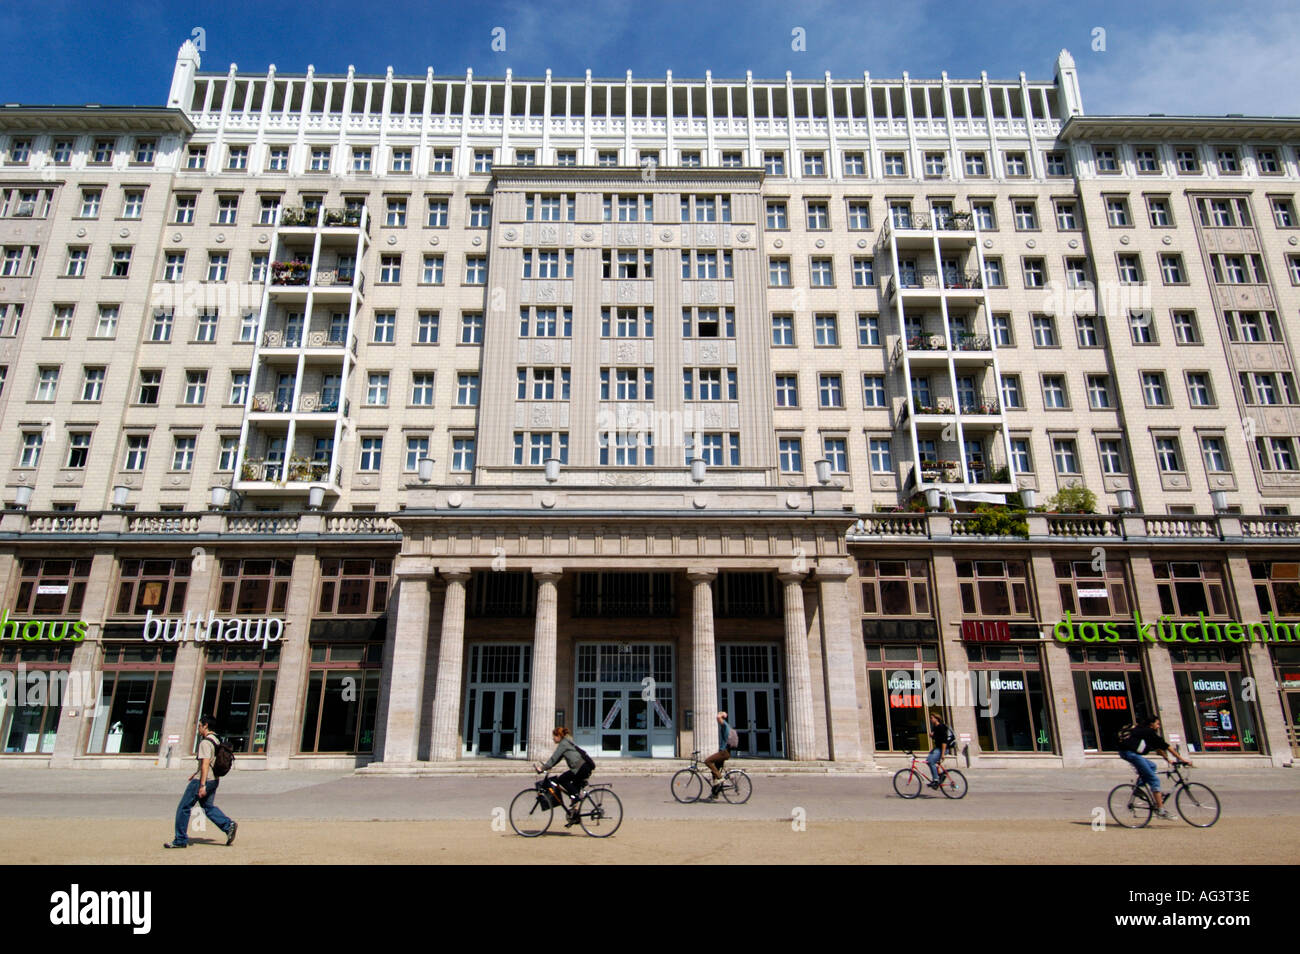 Staline selon Henri de guillemin. Cet-appartement-de-style-stalinien-typique-immeuble-sur-karl-marx-allee-a-berlin-ag3t3e